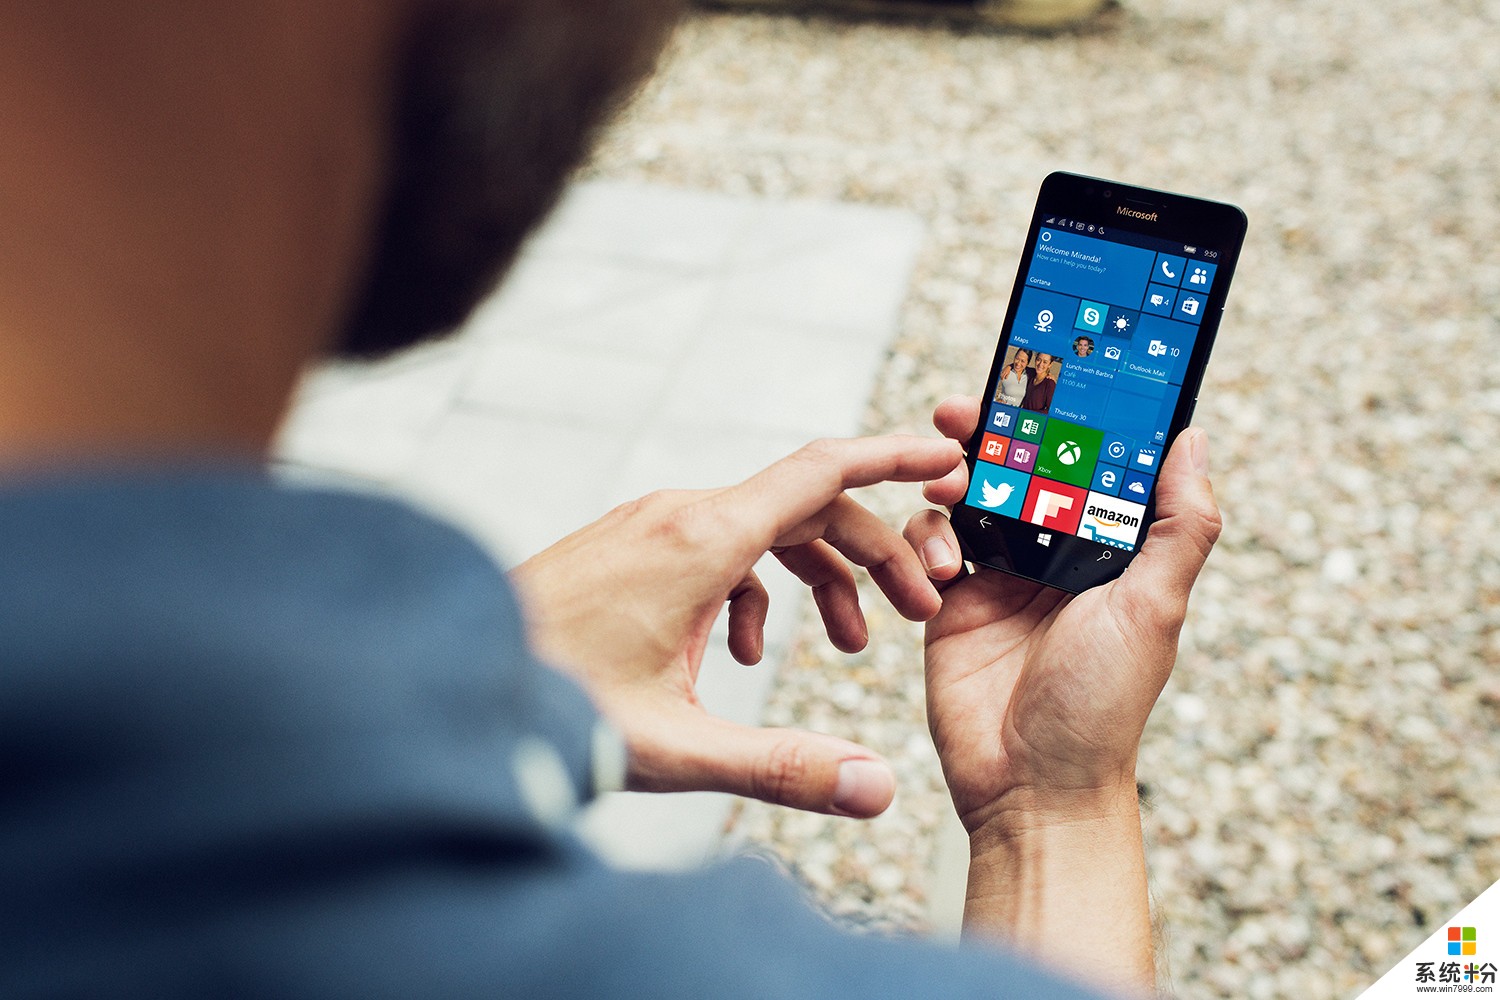 還沒等到 Surface Phone, 微軟就已經打算放棄 Windows 10 Mobile 了(1)